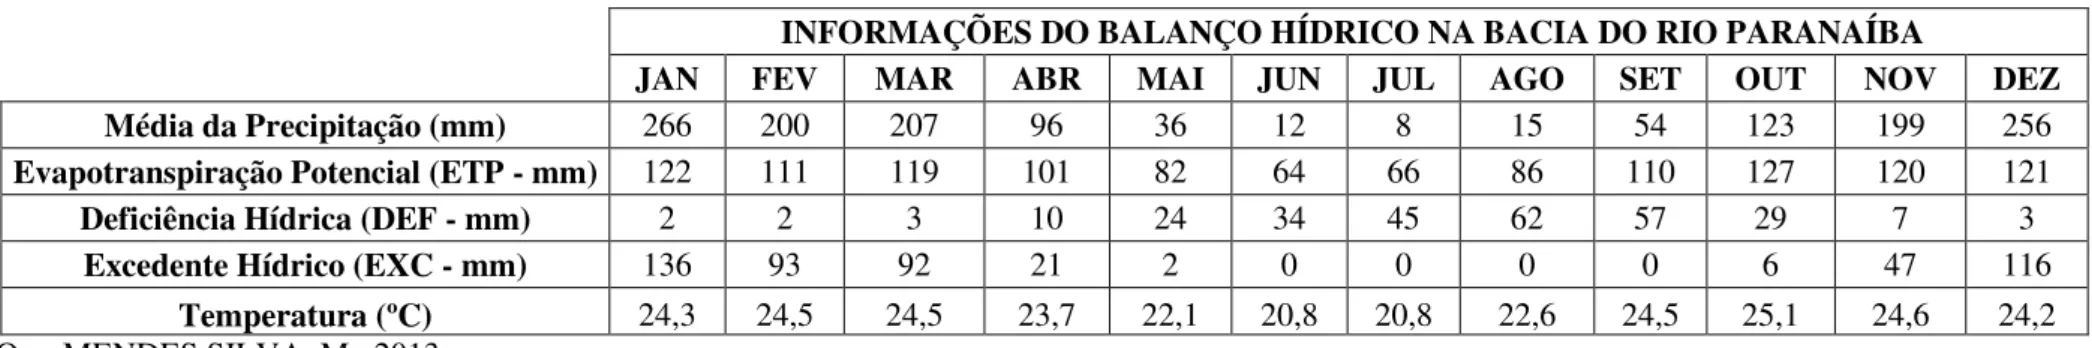 Gráfico 3: Extrato mensal das informações do balanço hídrico climatológico na bacia do rio Paranaíba (1973-2011)  Org